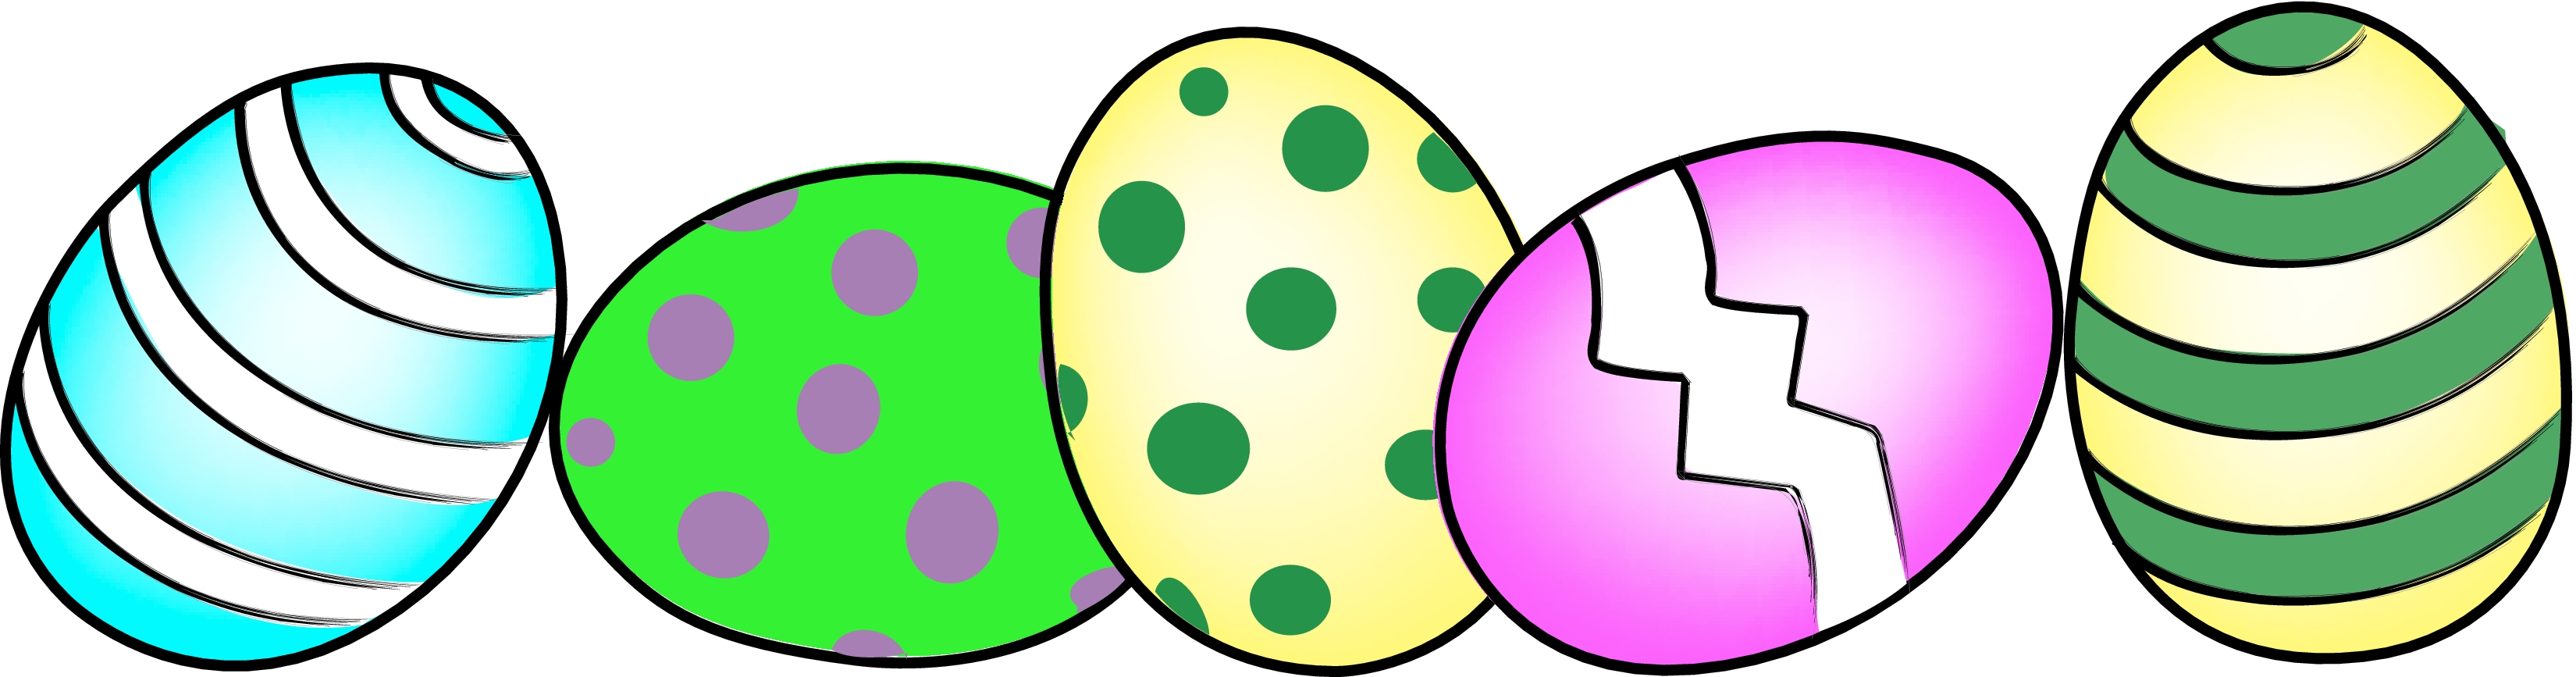 Easter Eggs Clipart.